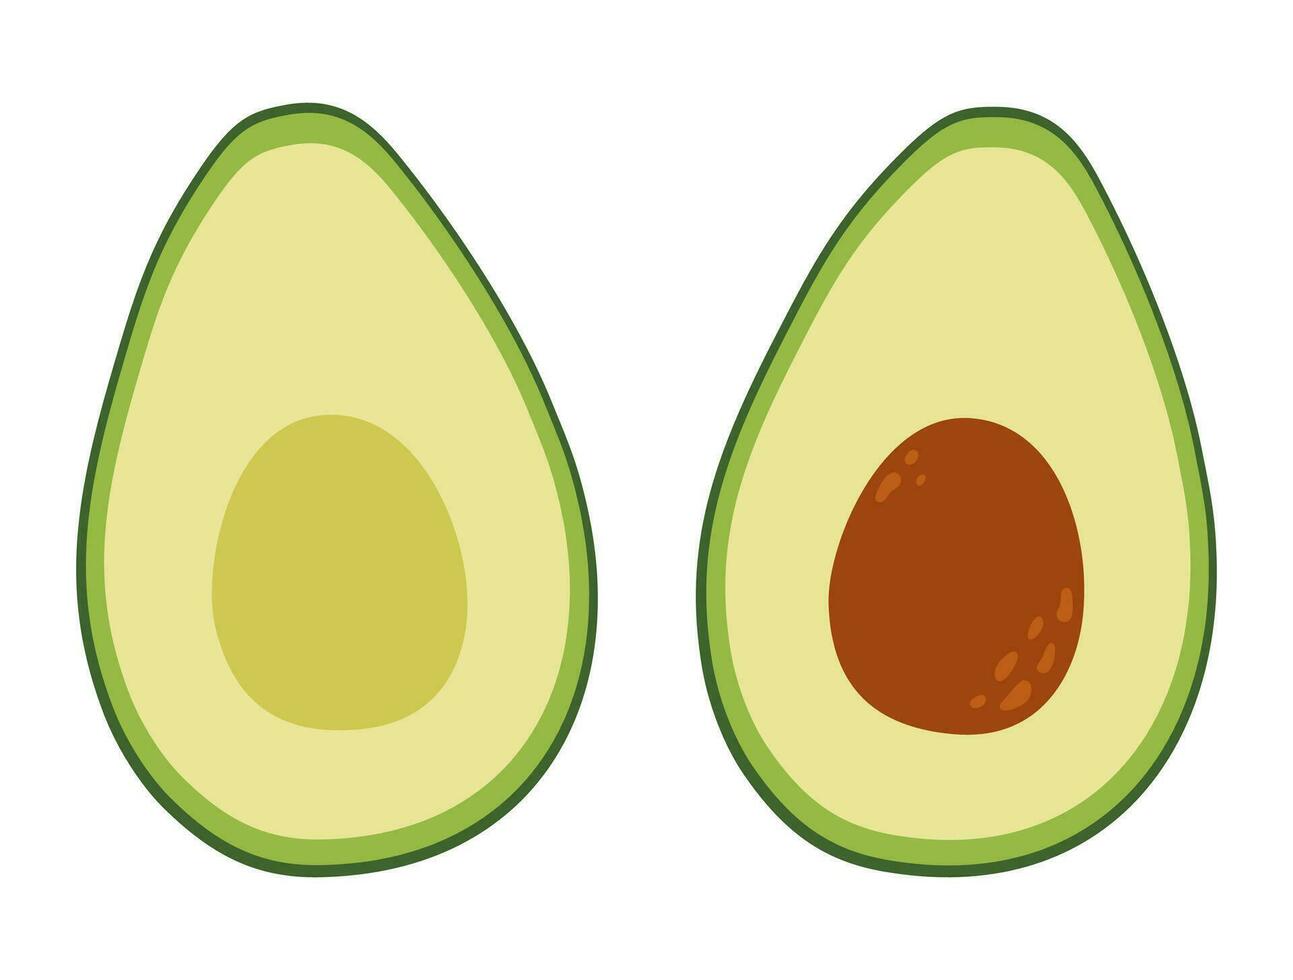 twee helften van een avocado. rauw vers groen groente met kern en pit. gezond vegetarisch voedsel. geïsoleerd vector illustratie in vlak stijl.